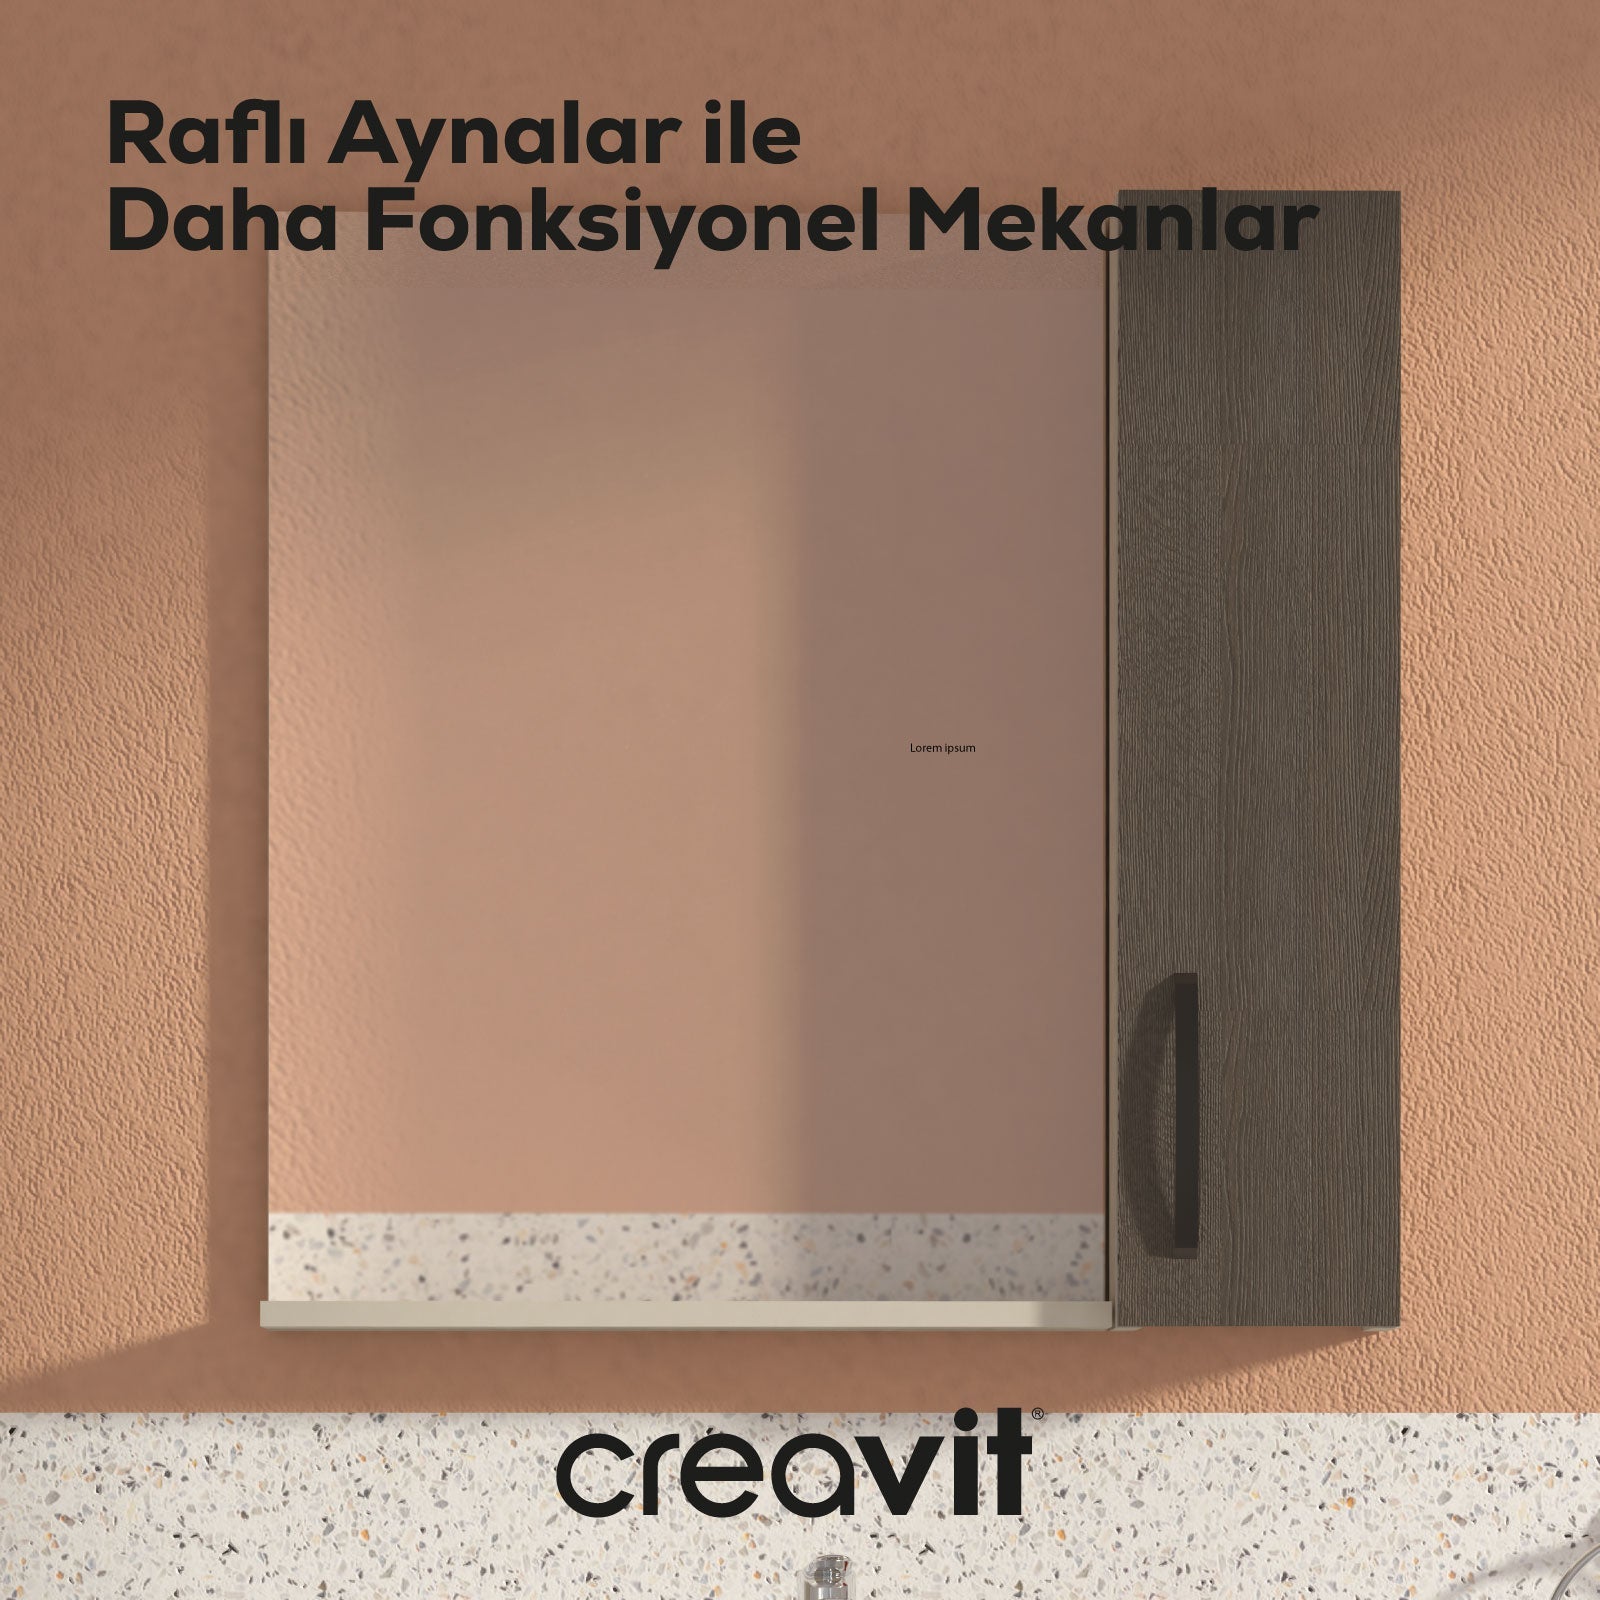 D10 45 cm Melamin Raflı Ayna Dafne - Creavit | Banyo Bu Tarafta